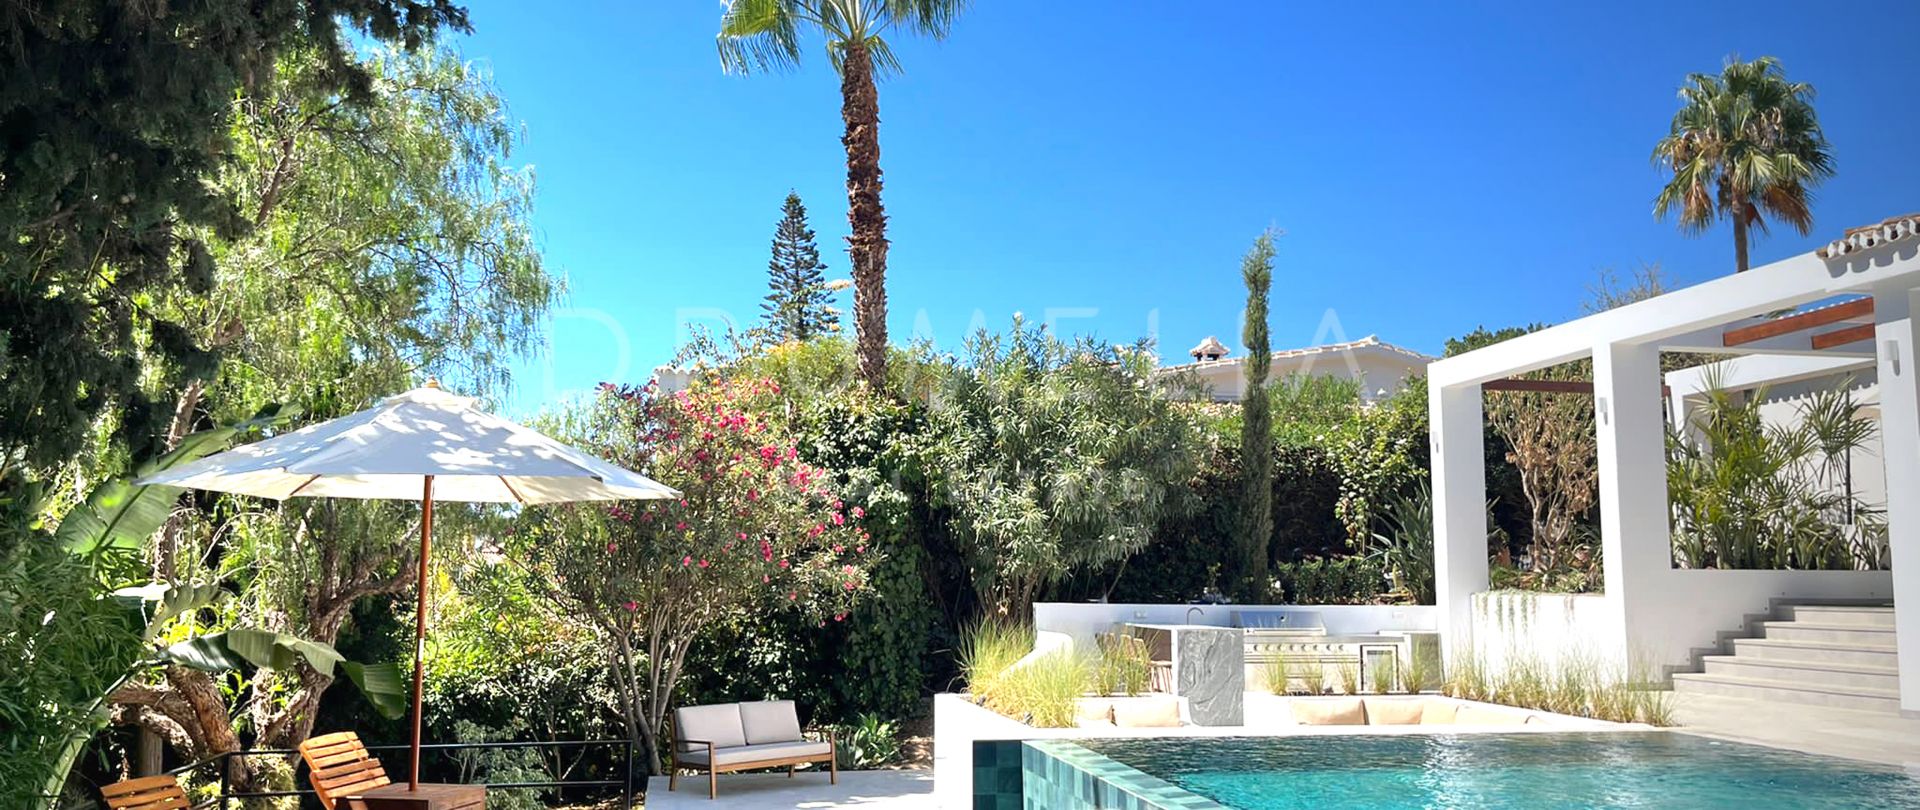 Villa de diseño contemporáneo-clásico a medida en venta en la hermosa El Rosario, Marbella Este